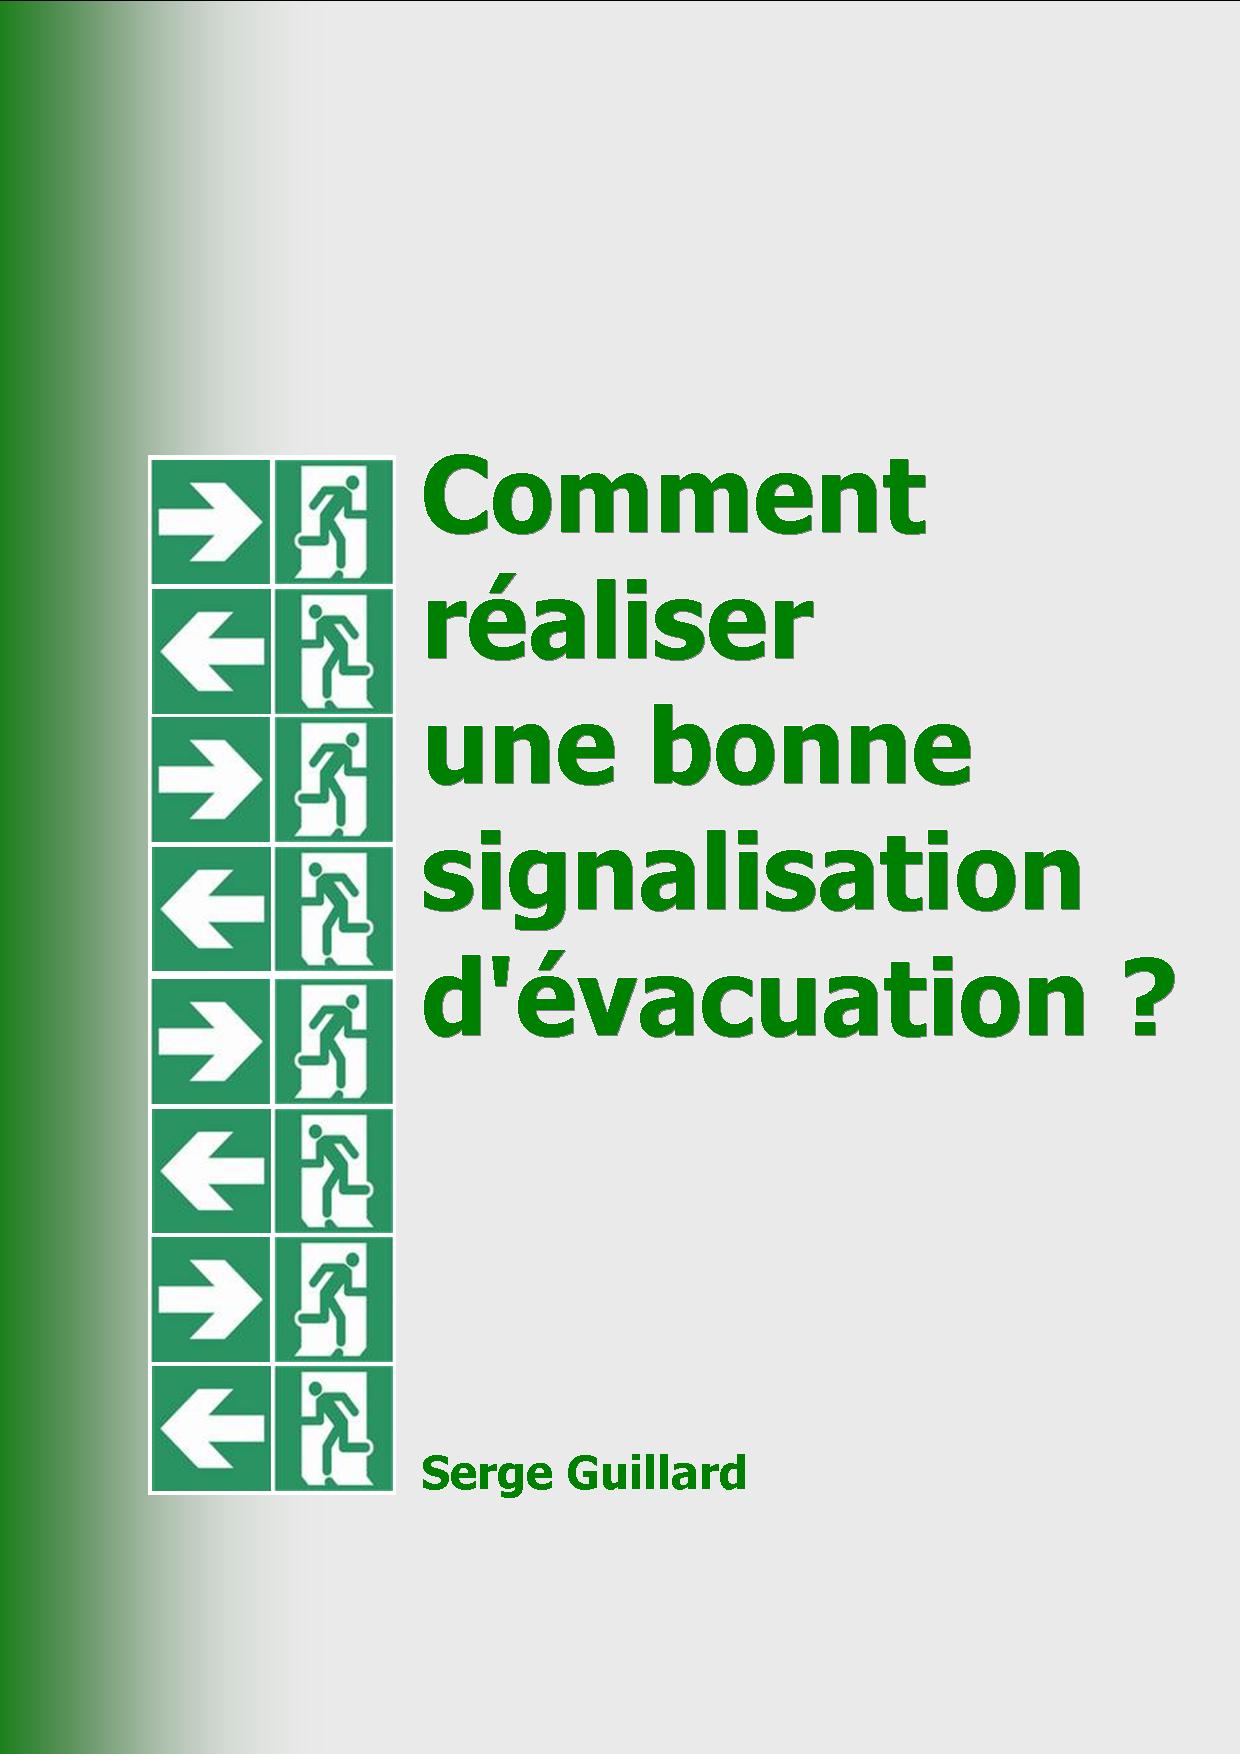 Comment realiser une bonne signalisation d'evacuation ? ...  la reponse de Serge Guillard